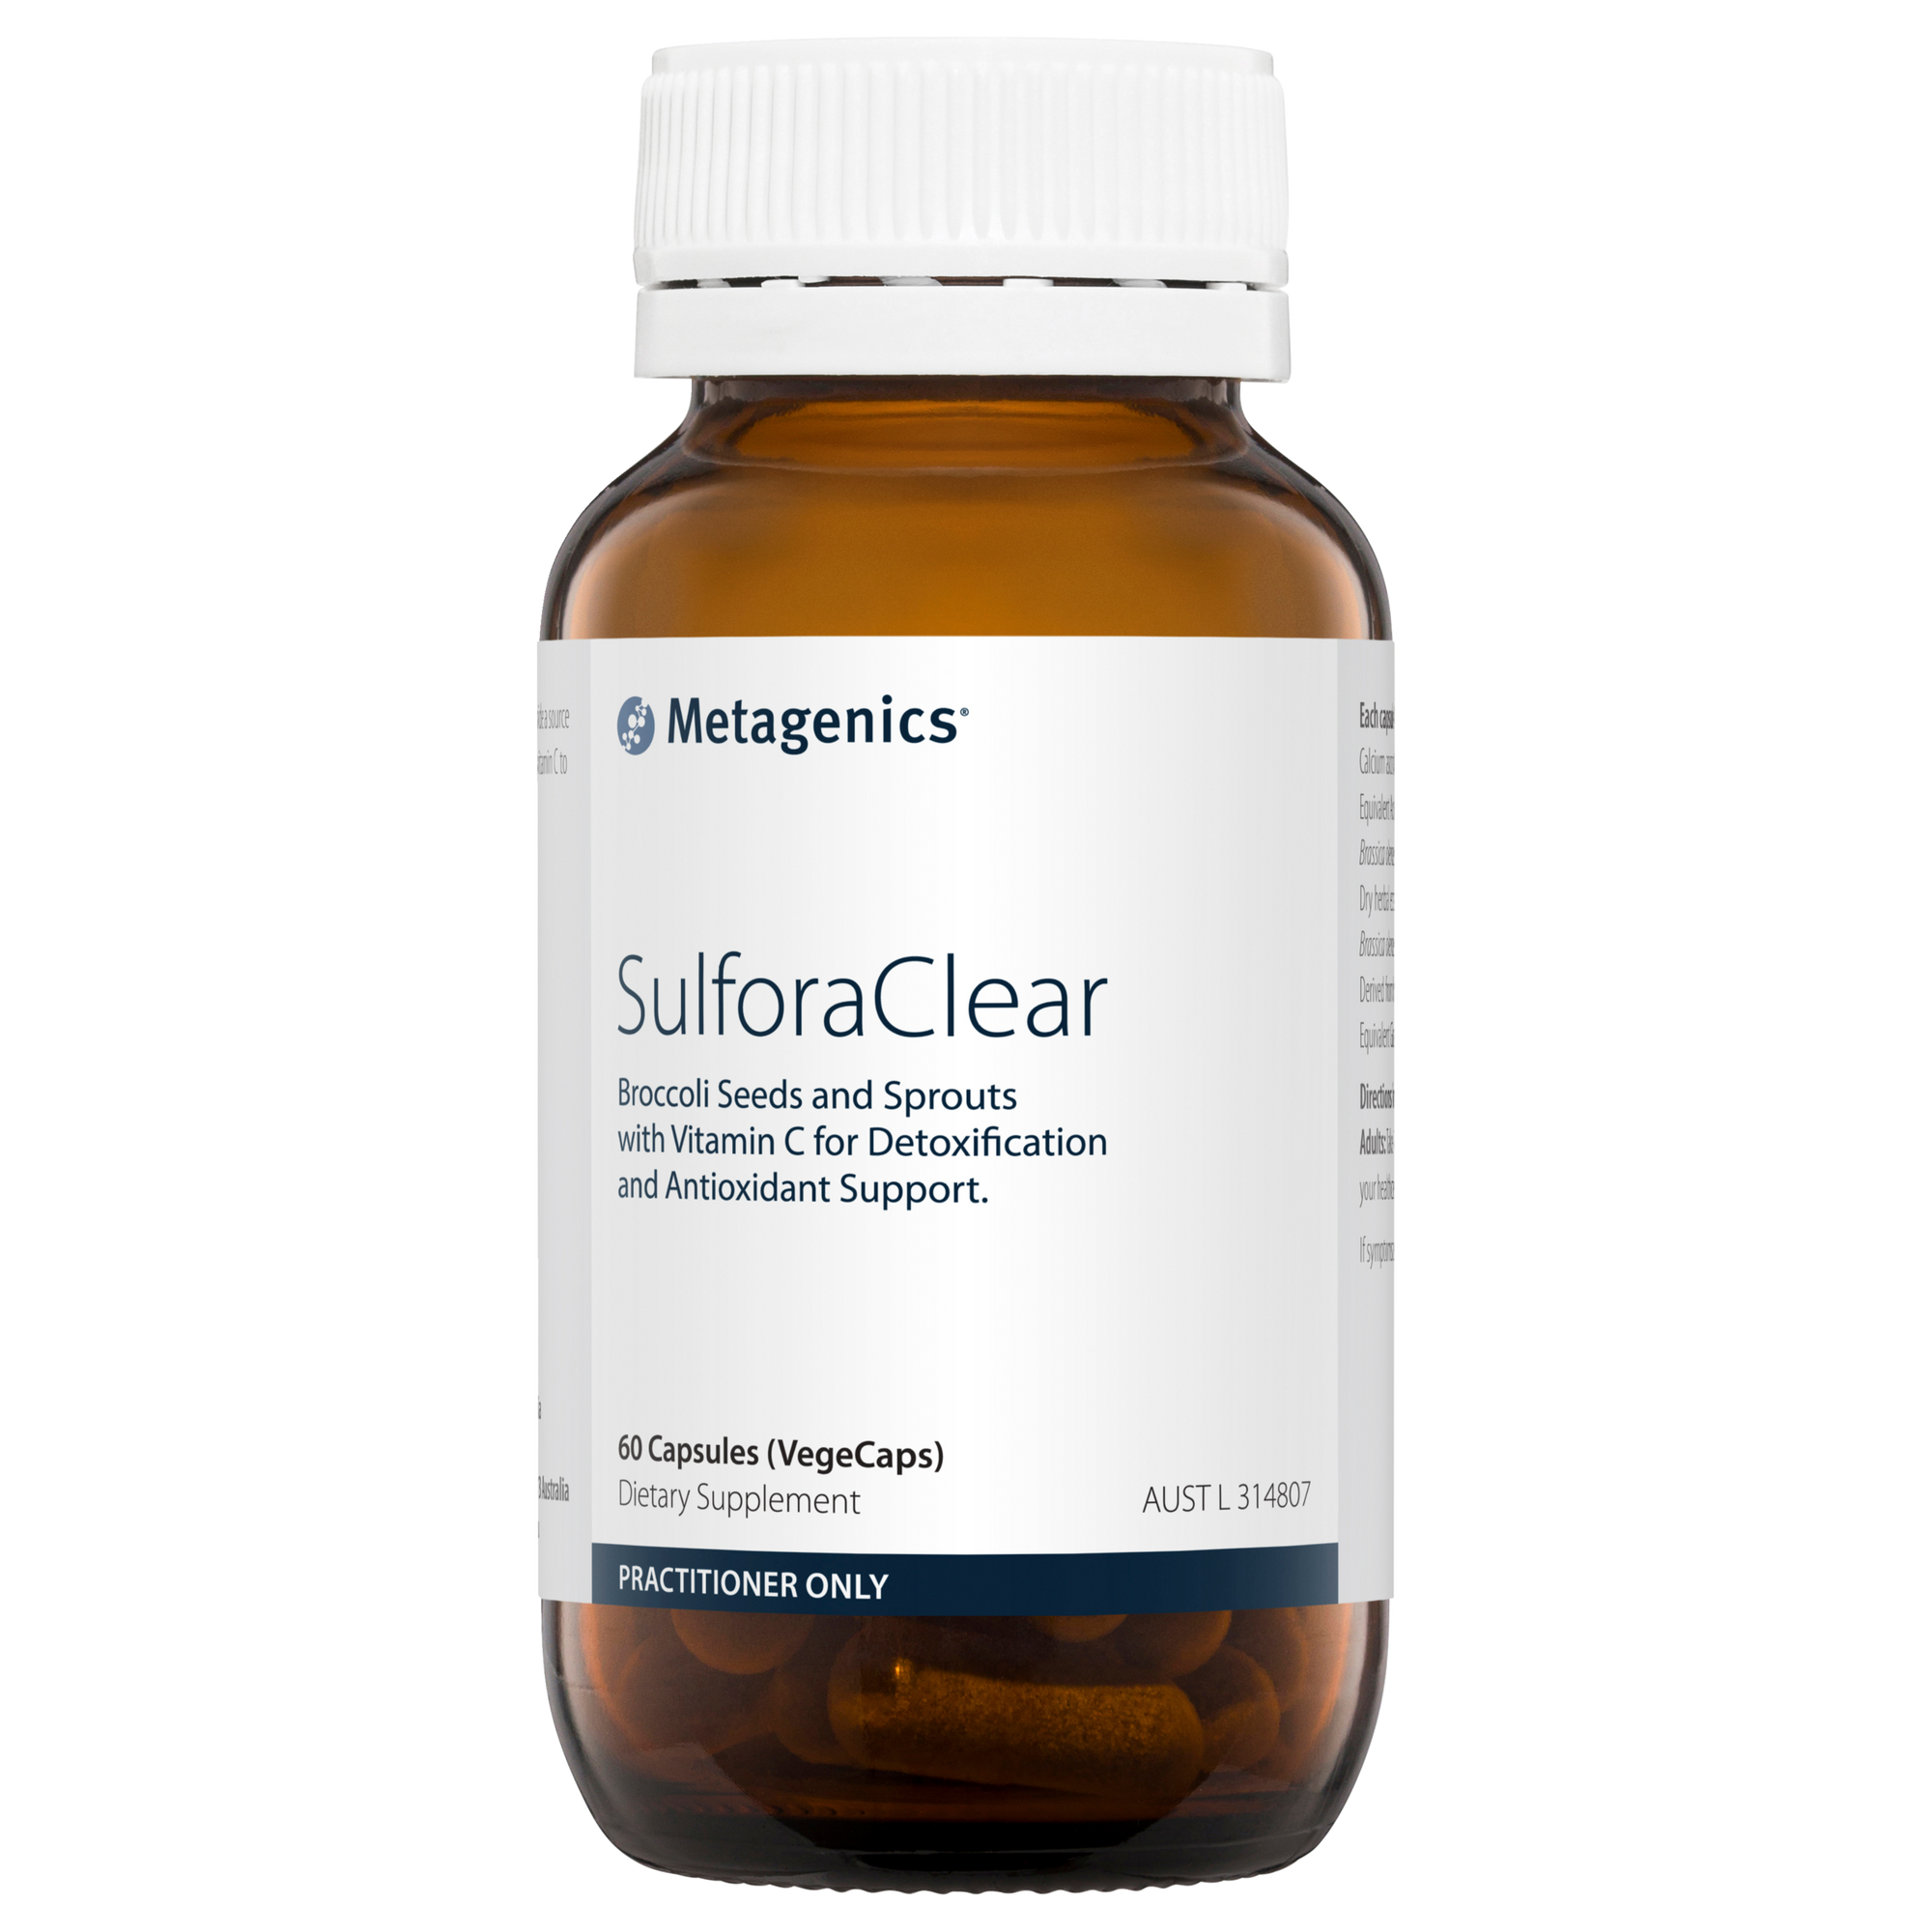 Metagenics SulforaClear 60 Capsules (VegeCaps)